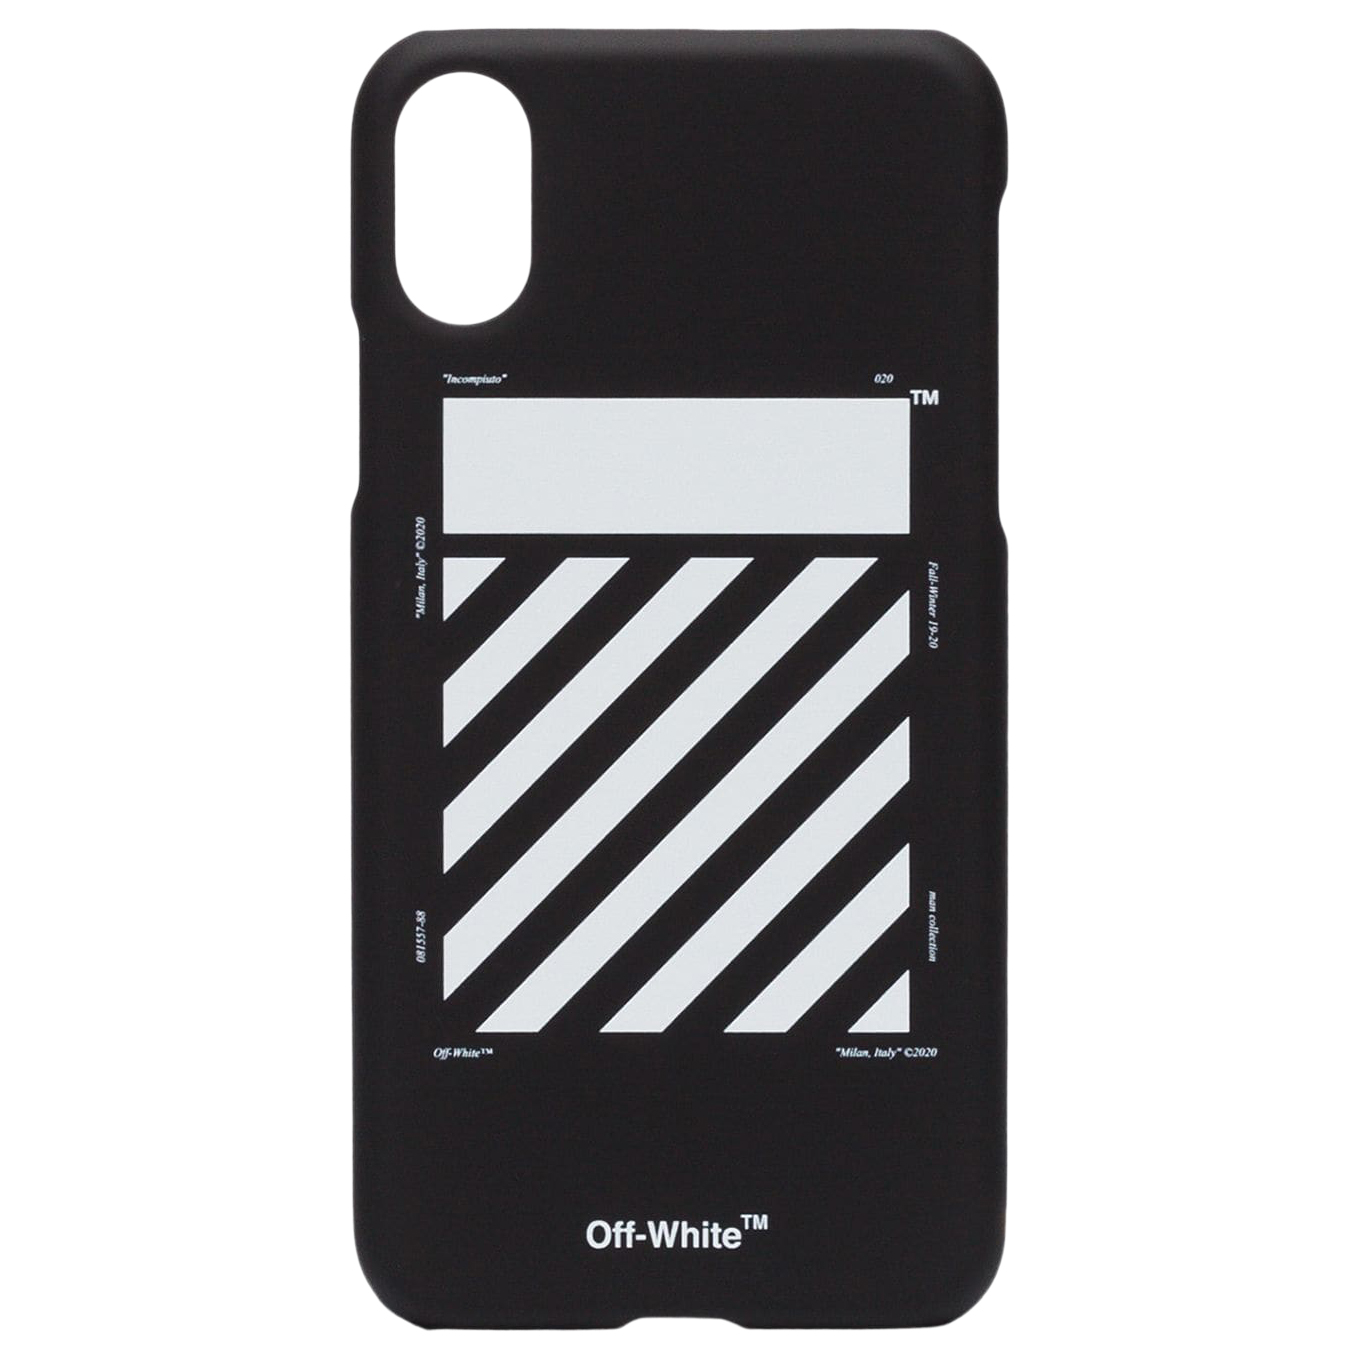 OFF-WHITE Diag iPhone XS Max Case Black/White - FW19 - US